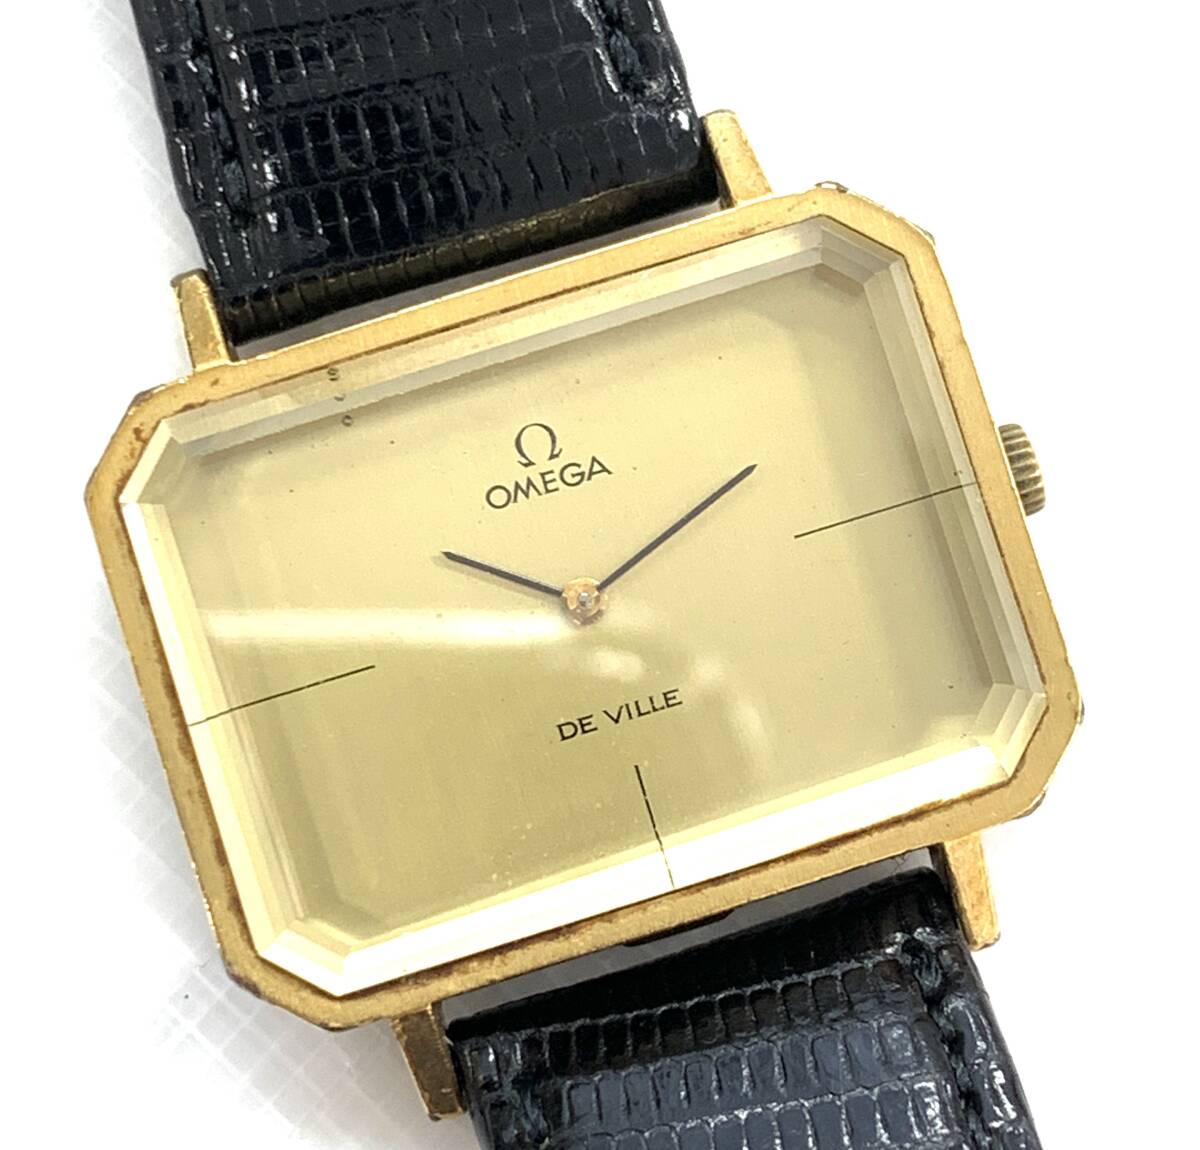 T04/158 OMEGA オメガ DE VILLE デヴィル デビル 時計 アナログ腕時計 レザーベルト GP